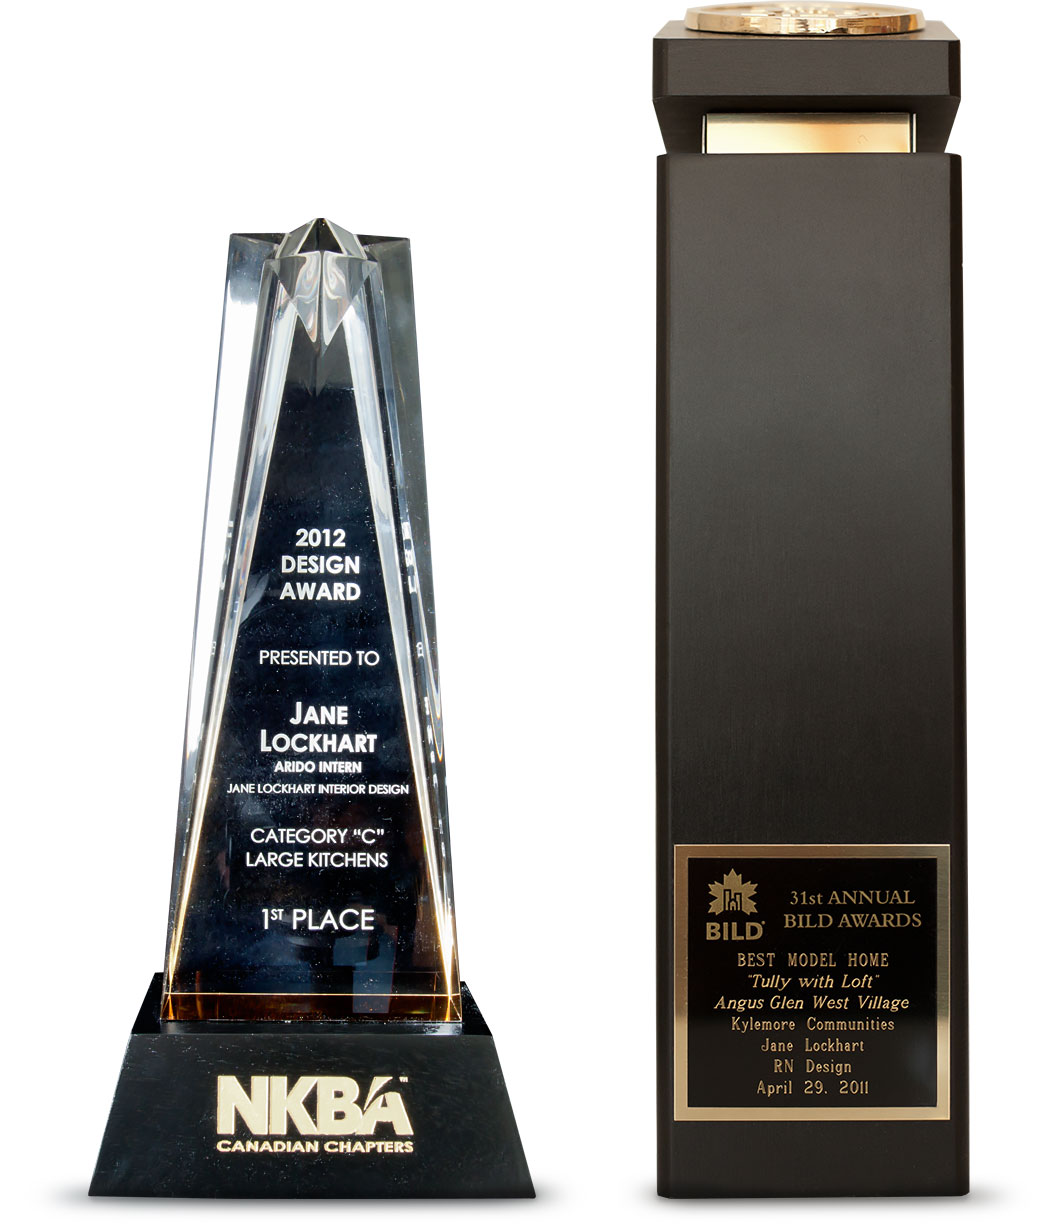 NKBA 2012 Design Award and BILD award for Kylemore Communities model home.